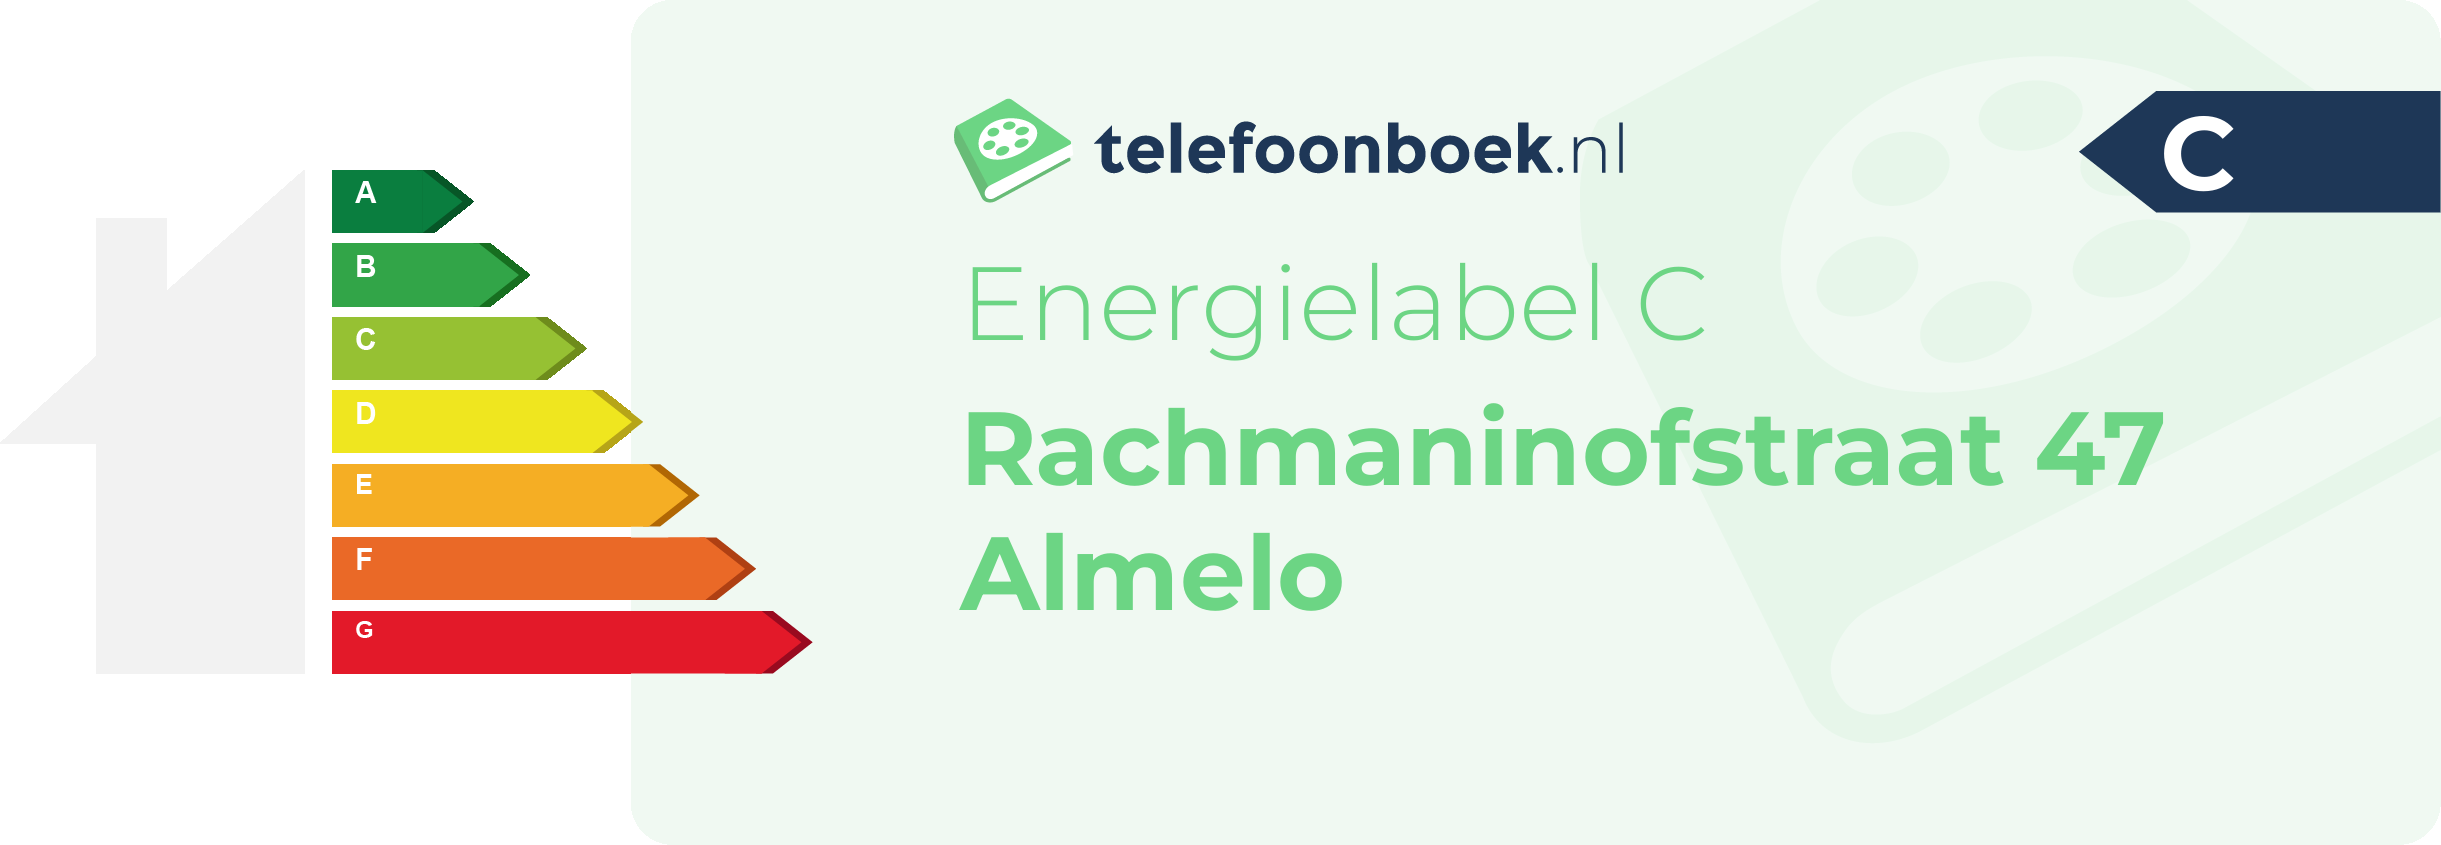 Energielabel Rachmaninofstraat 47 Almelo